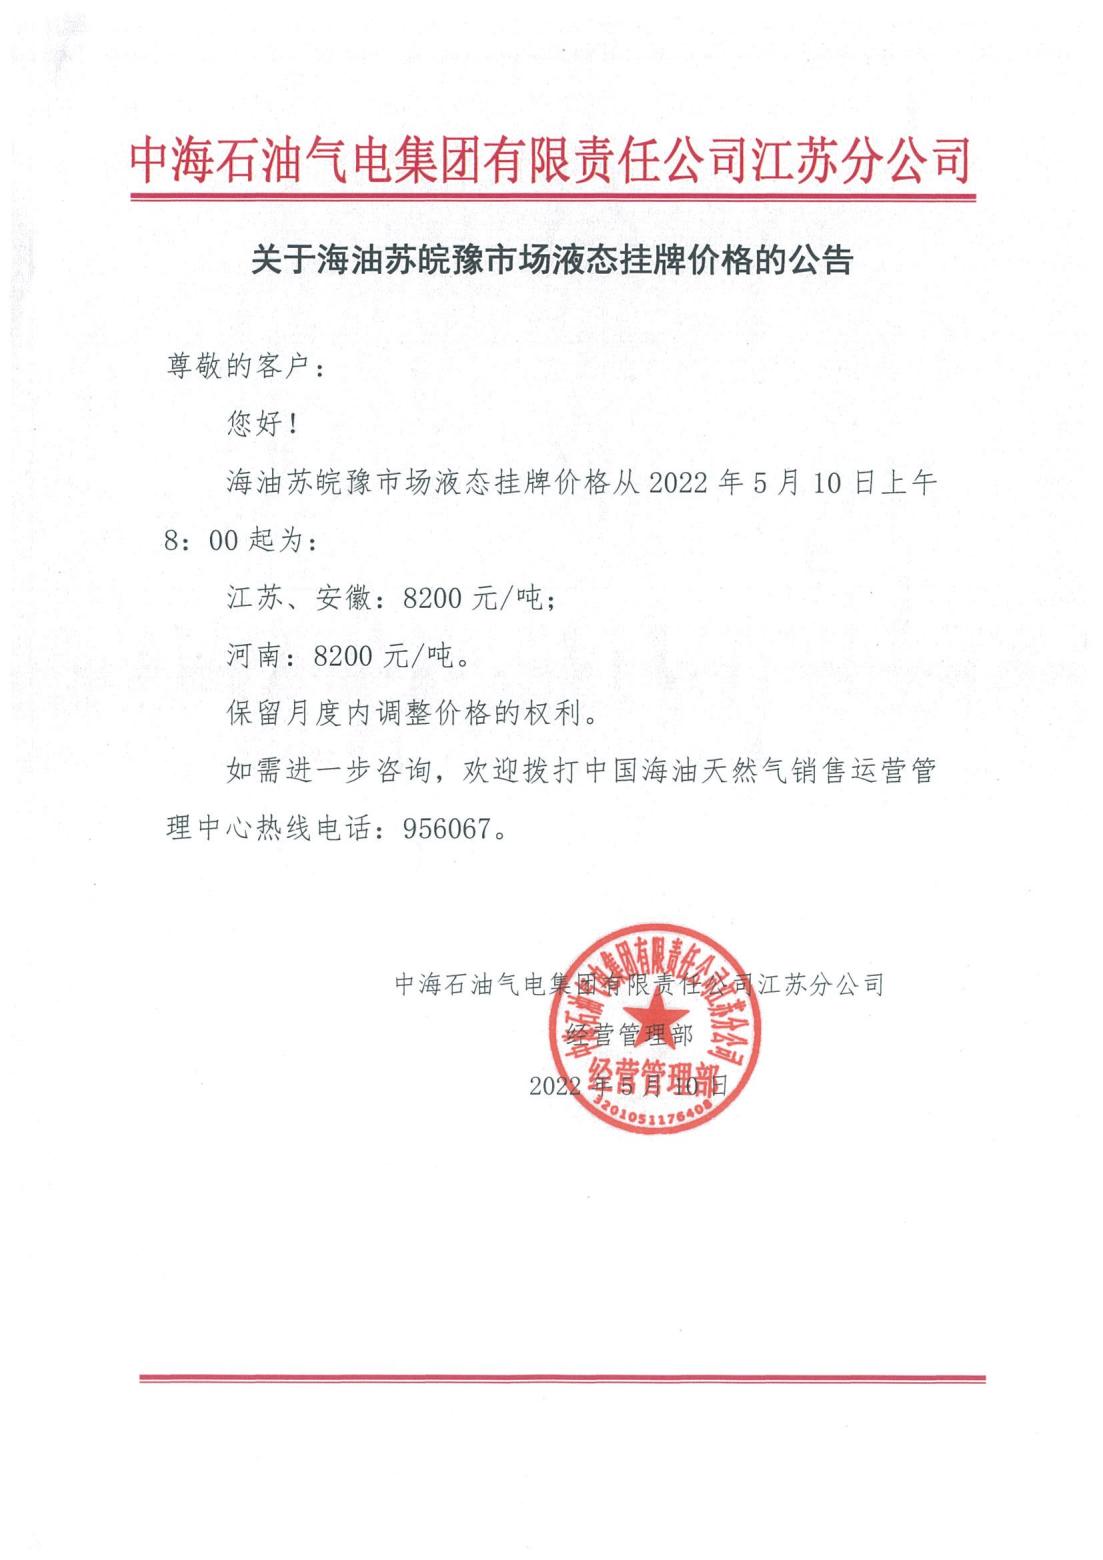 中海油江苏分公司关于5月10日华东苏皖市场价格调整公告_00.jpg